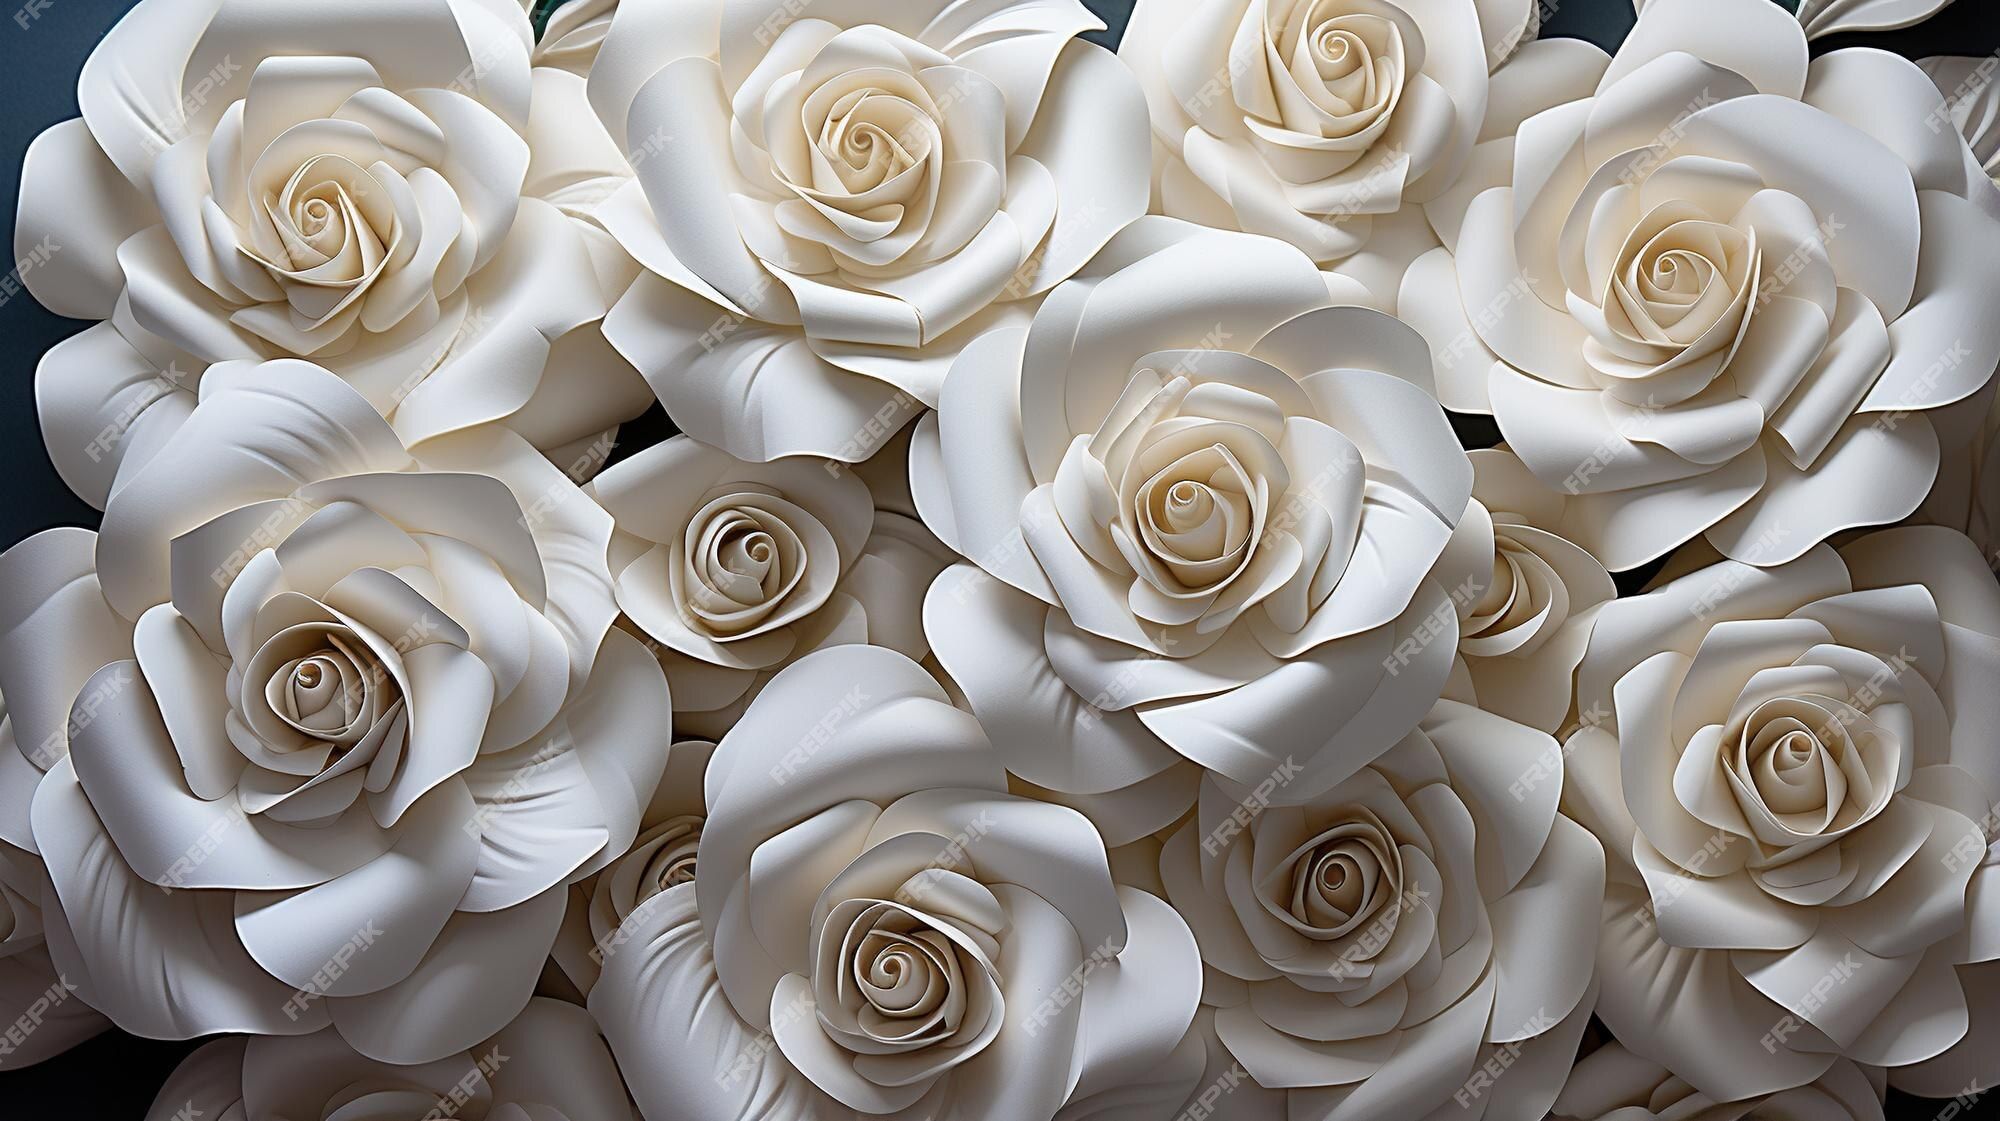  Weiße Rosen Hintergrundbild 2000x1121. Weiße rosen hintergrundhd 8k wallpaper graphic image